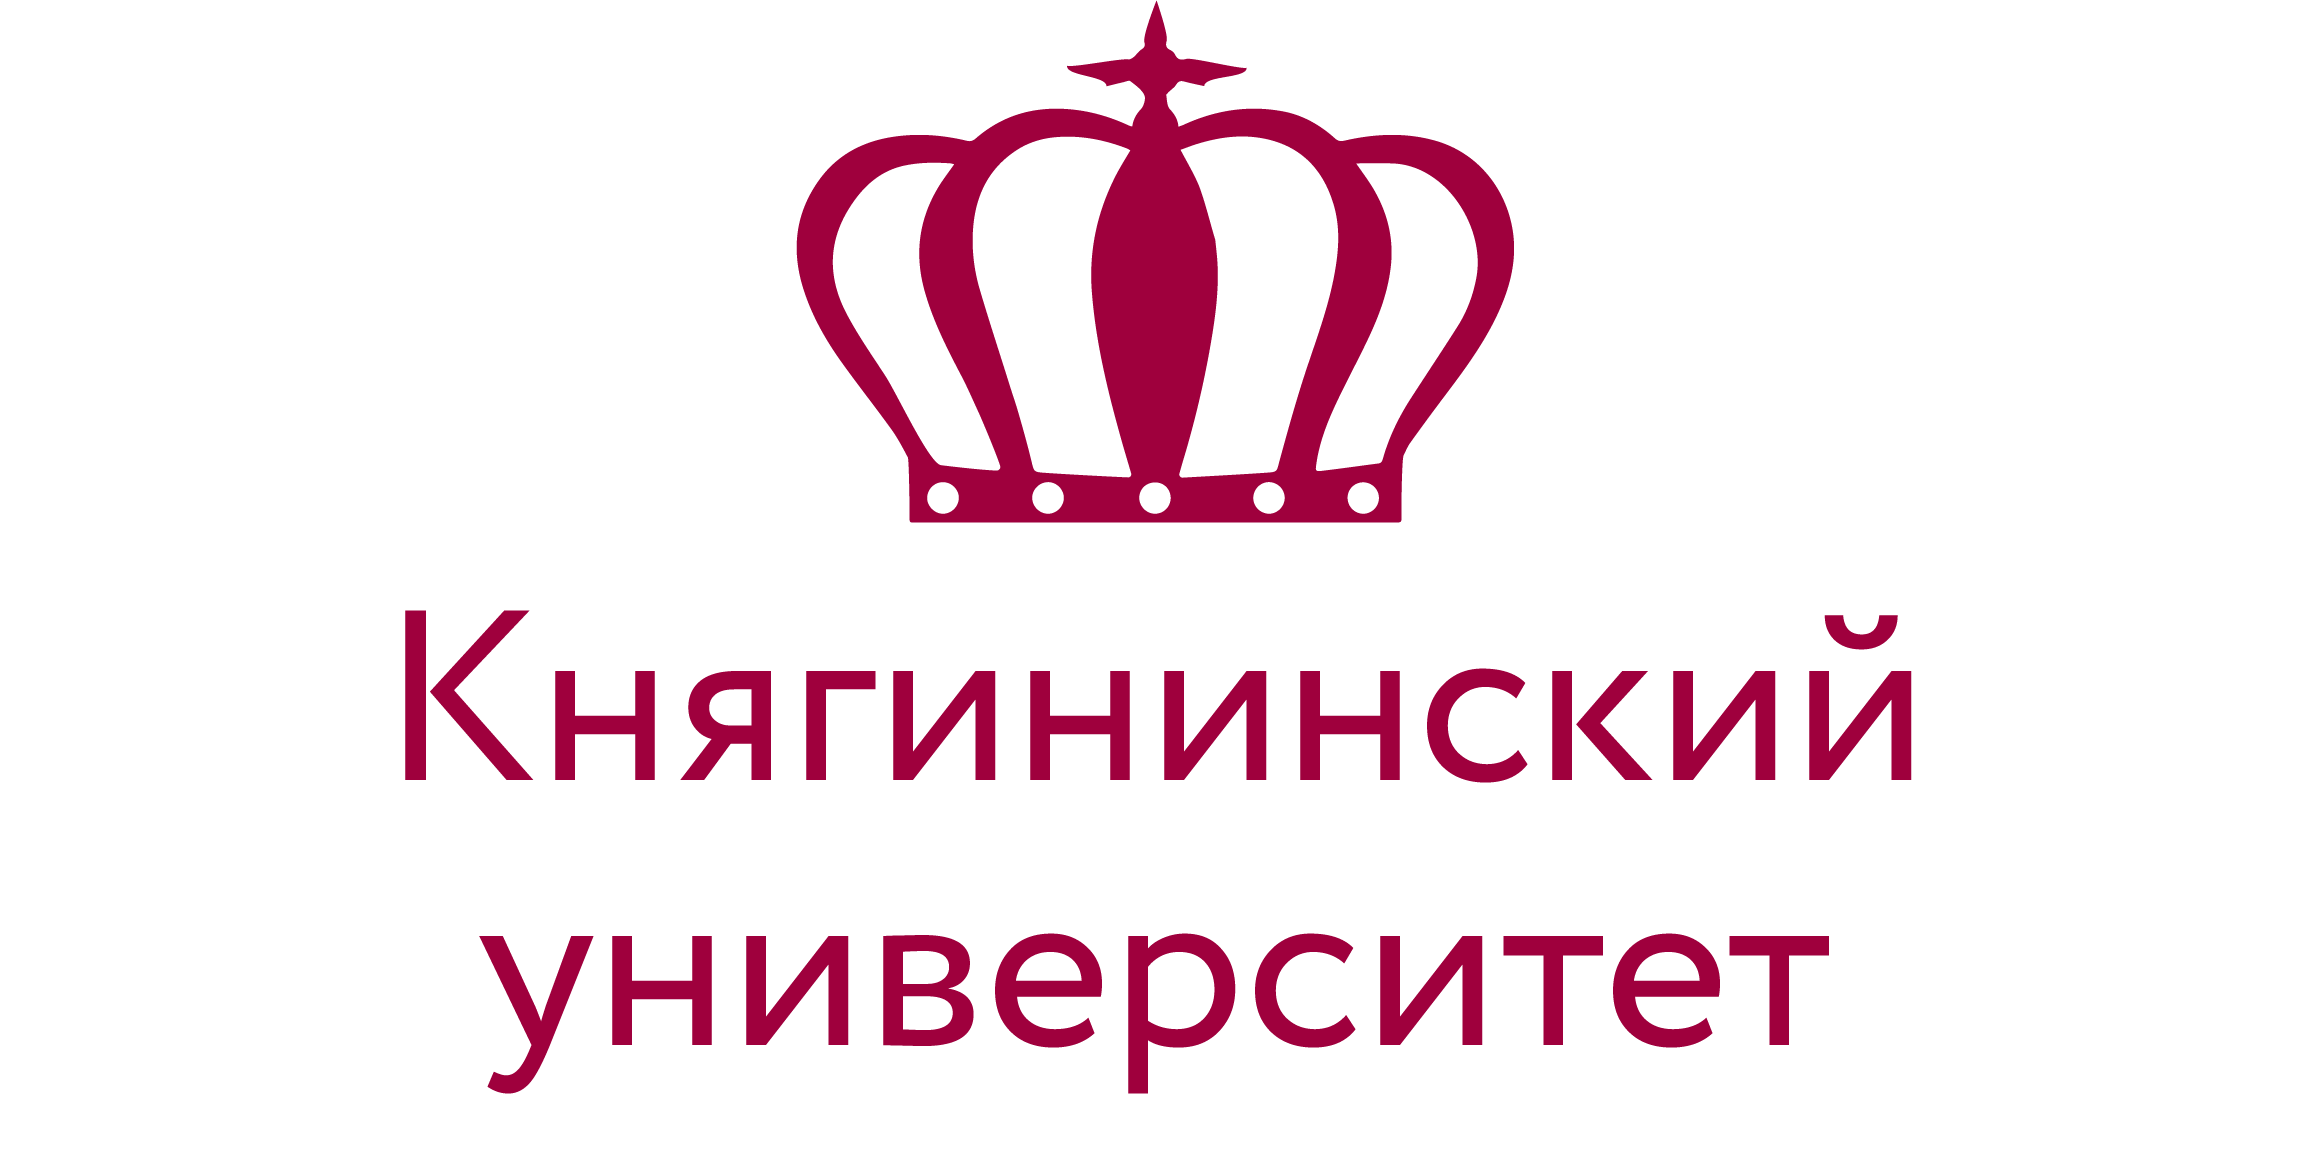 Сайт княгининского университета